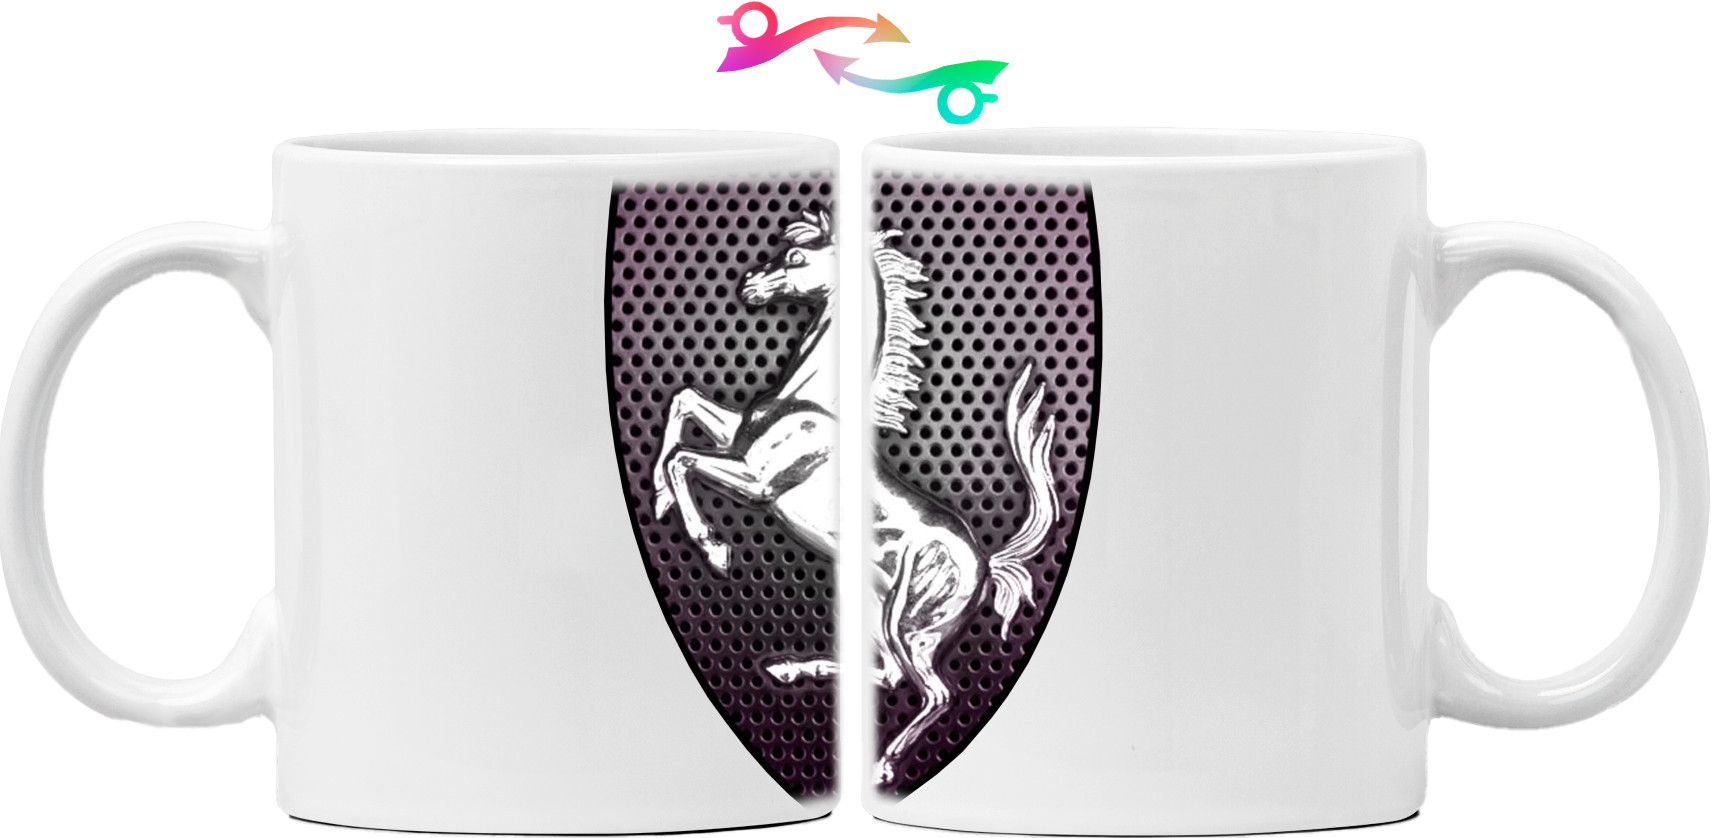 Ferrari logo 3